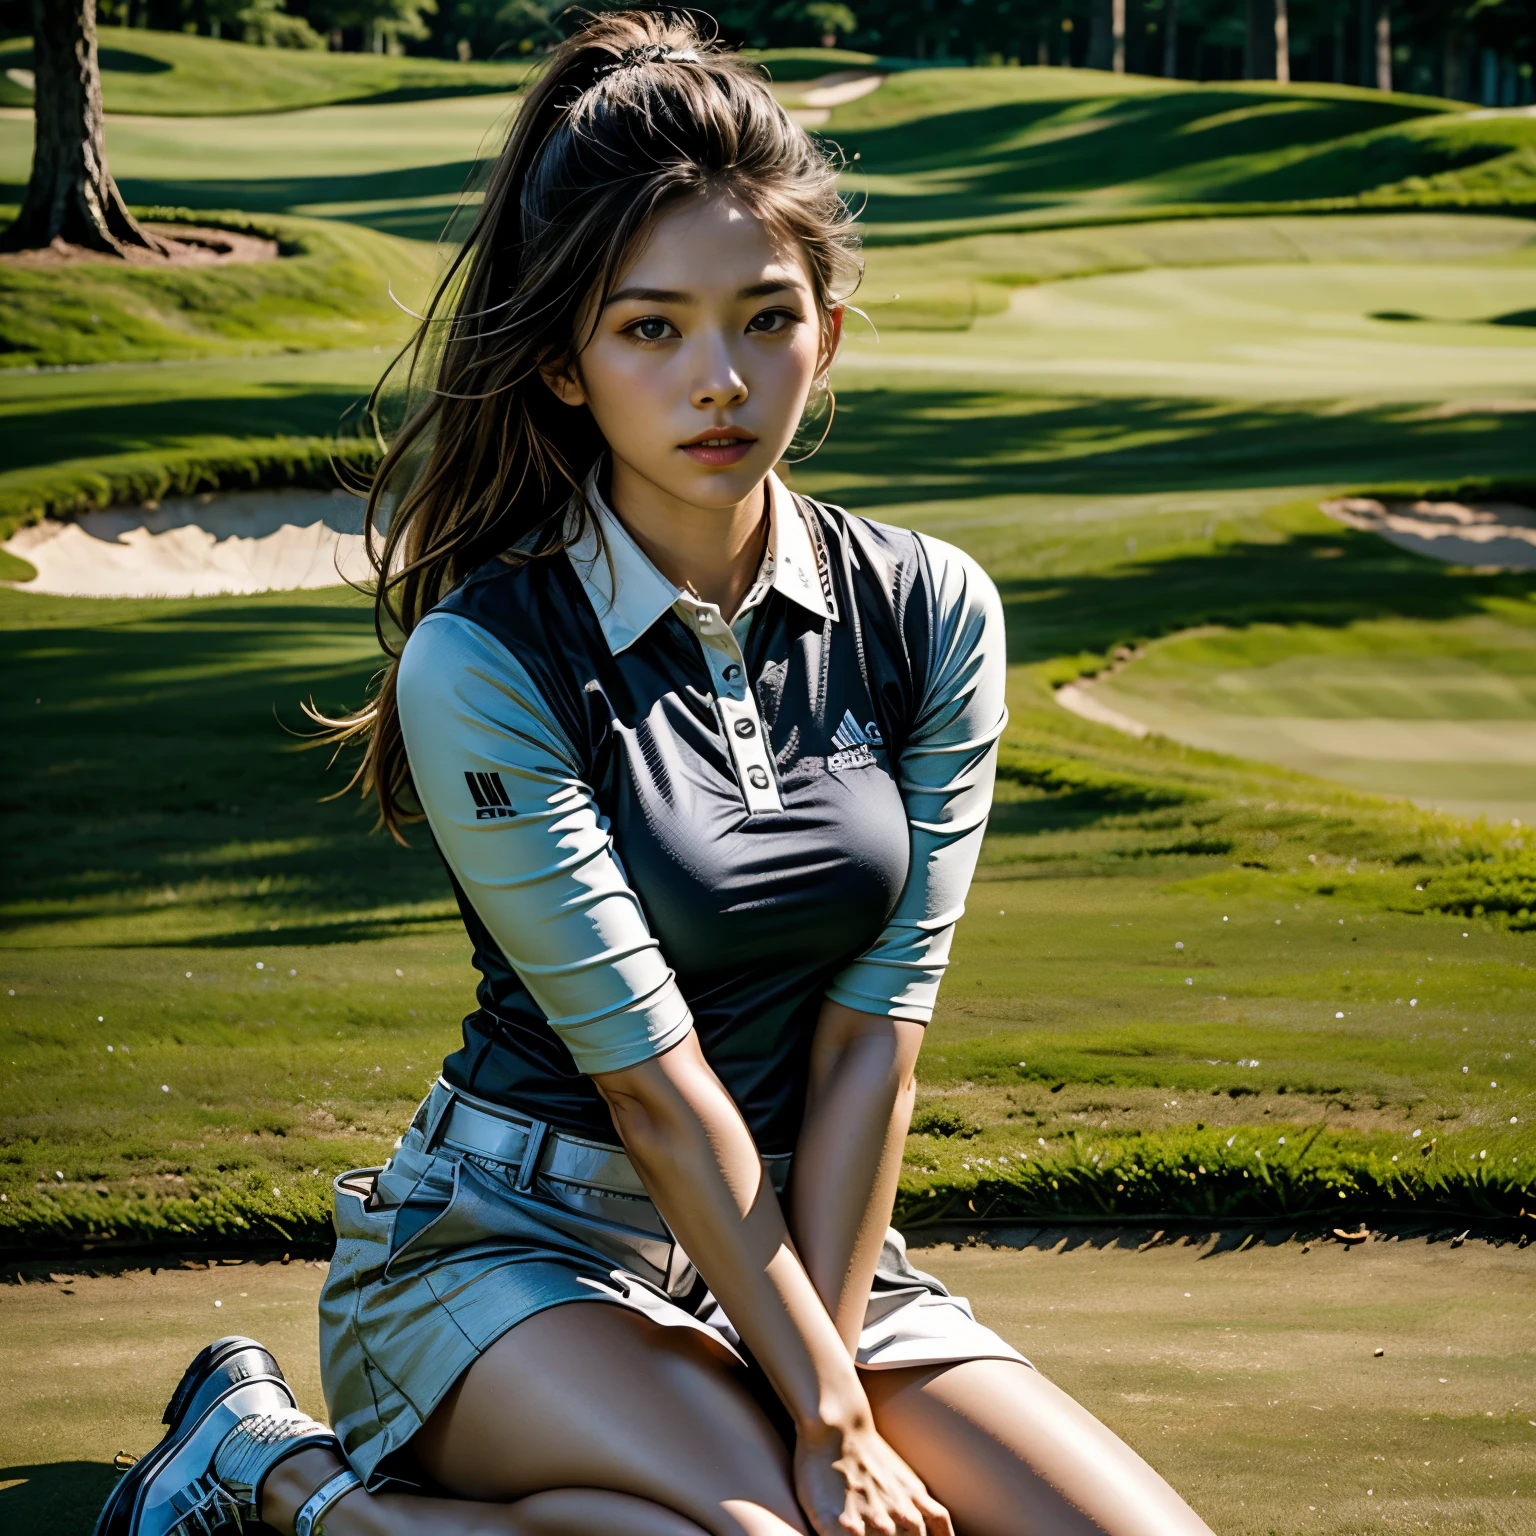 Une jeune et extrêmement belle femme、。Golfeur professionnel